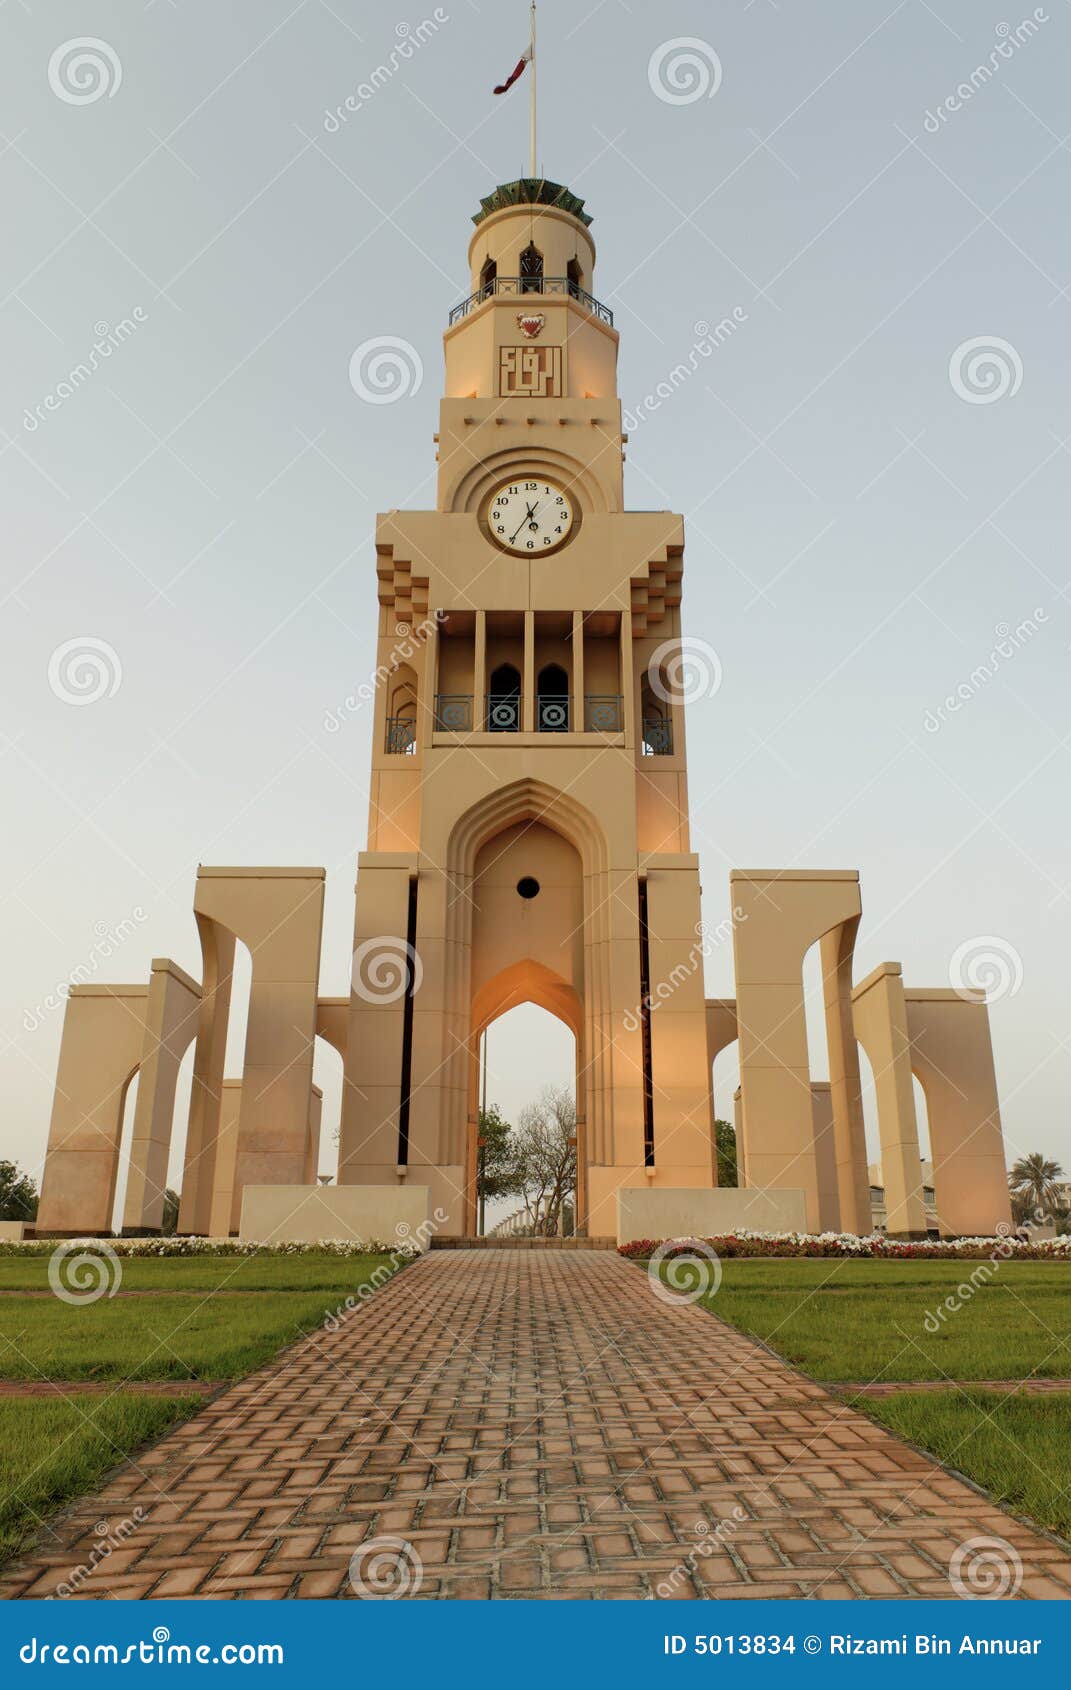 riffa clock tower, bahrain